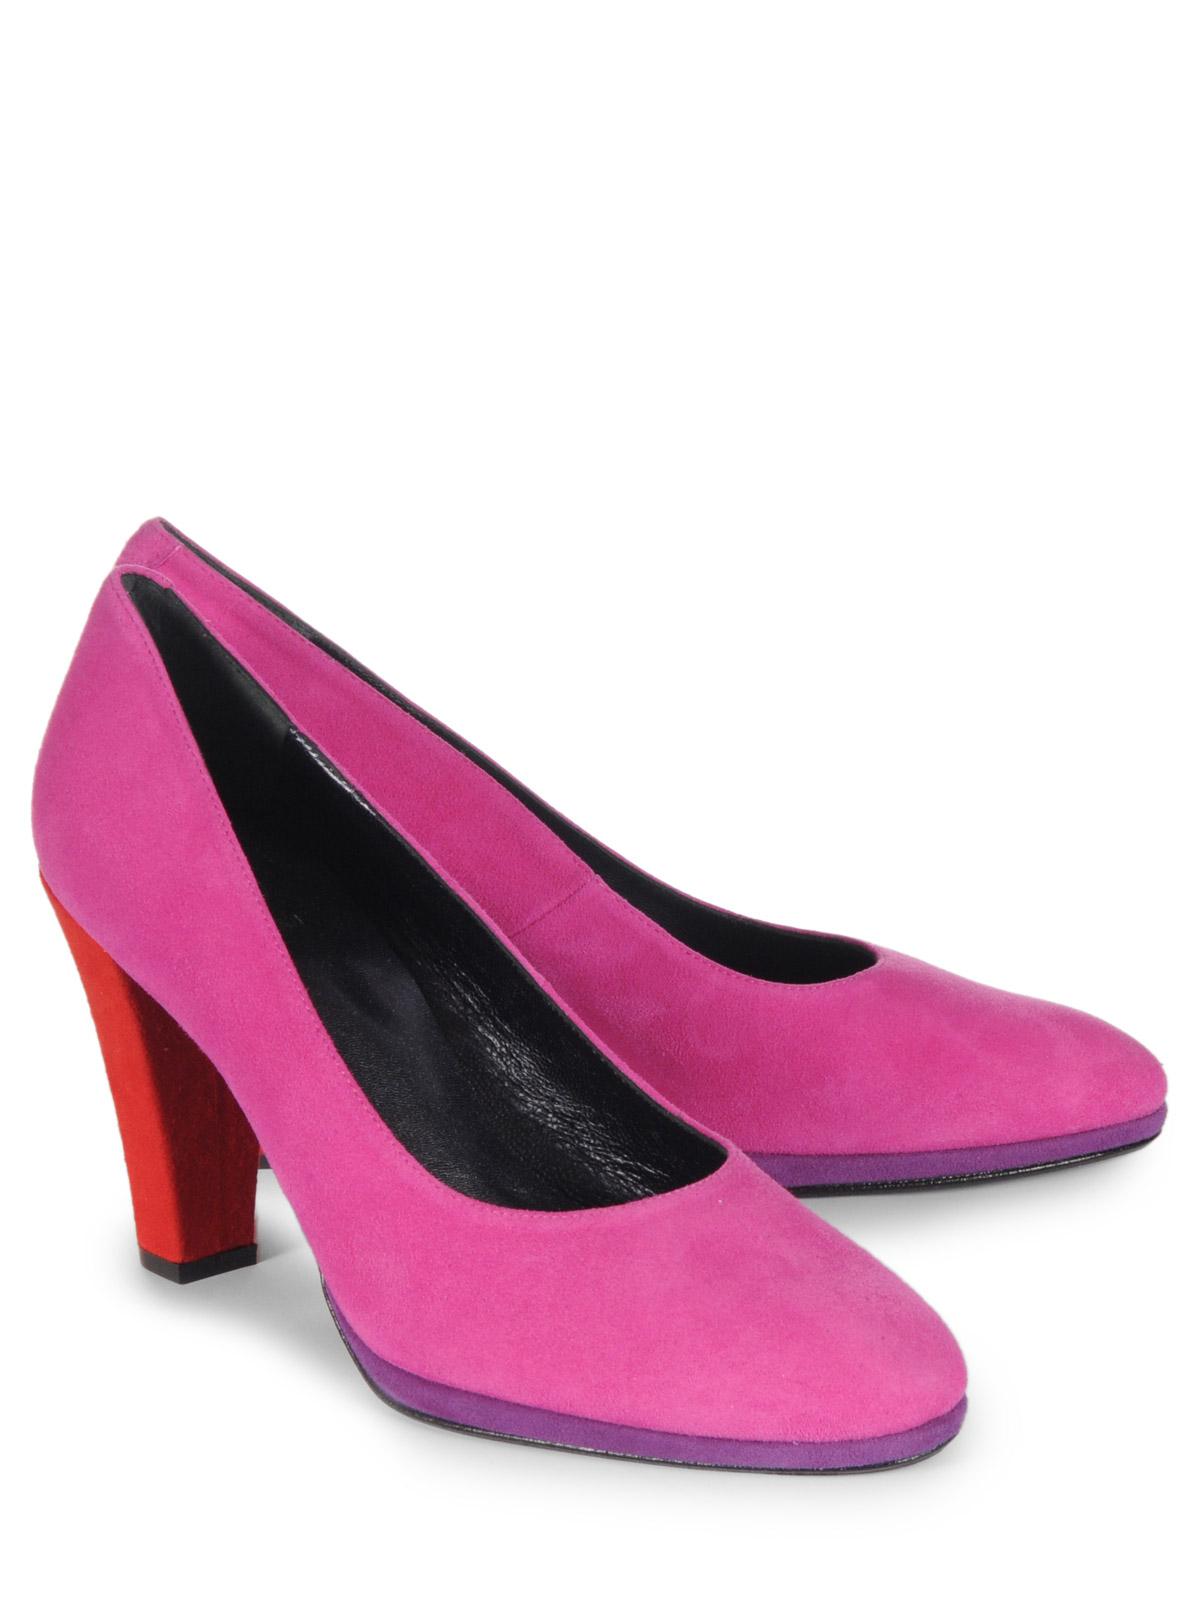 Foto Otto Kern Zapatos pumps rosa EU: 37